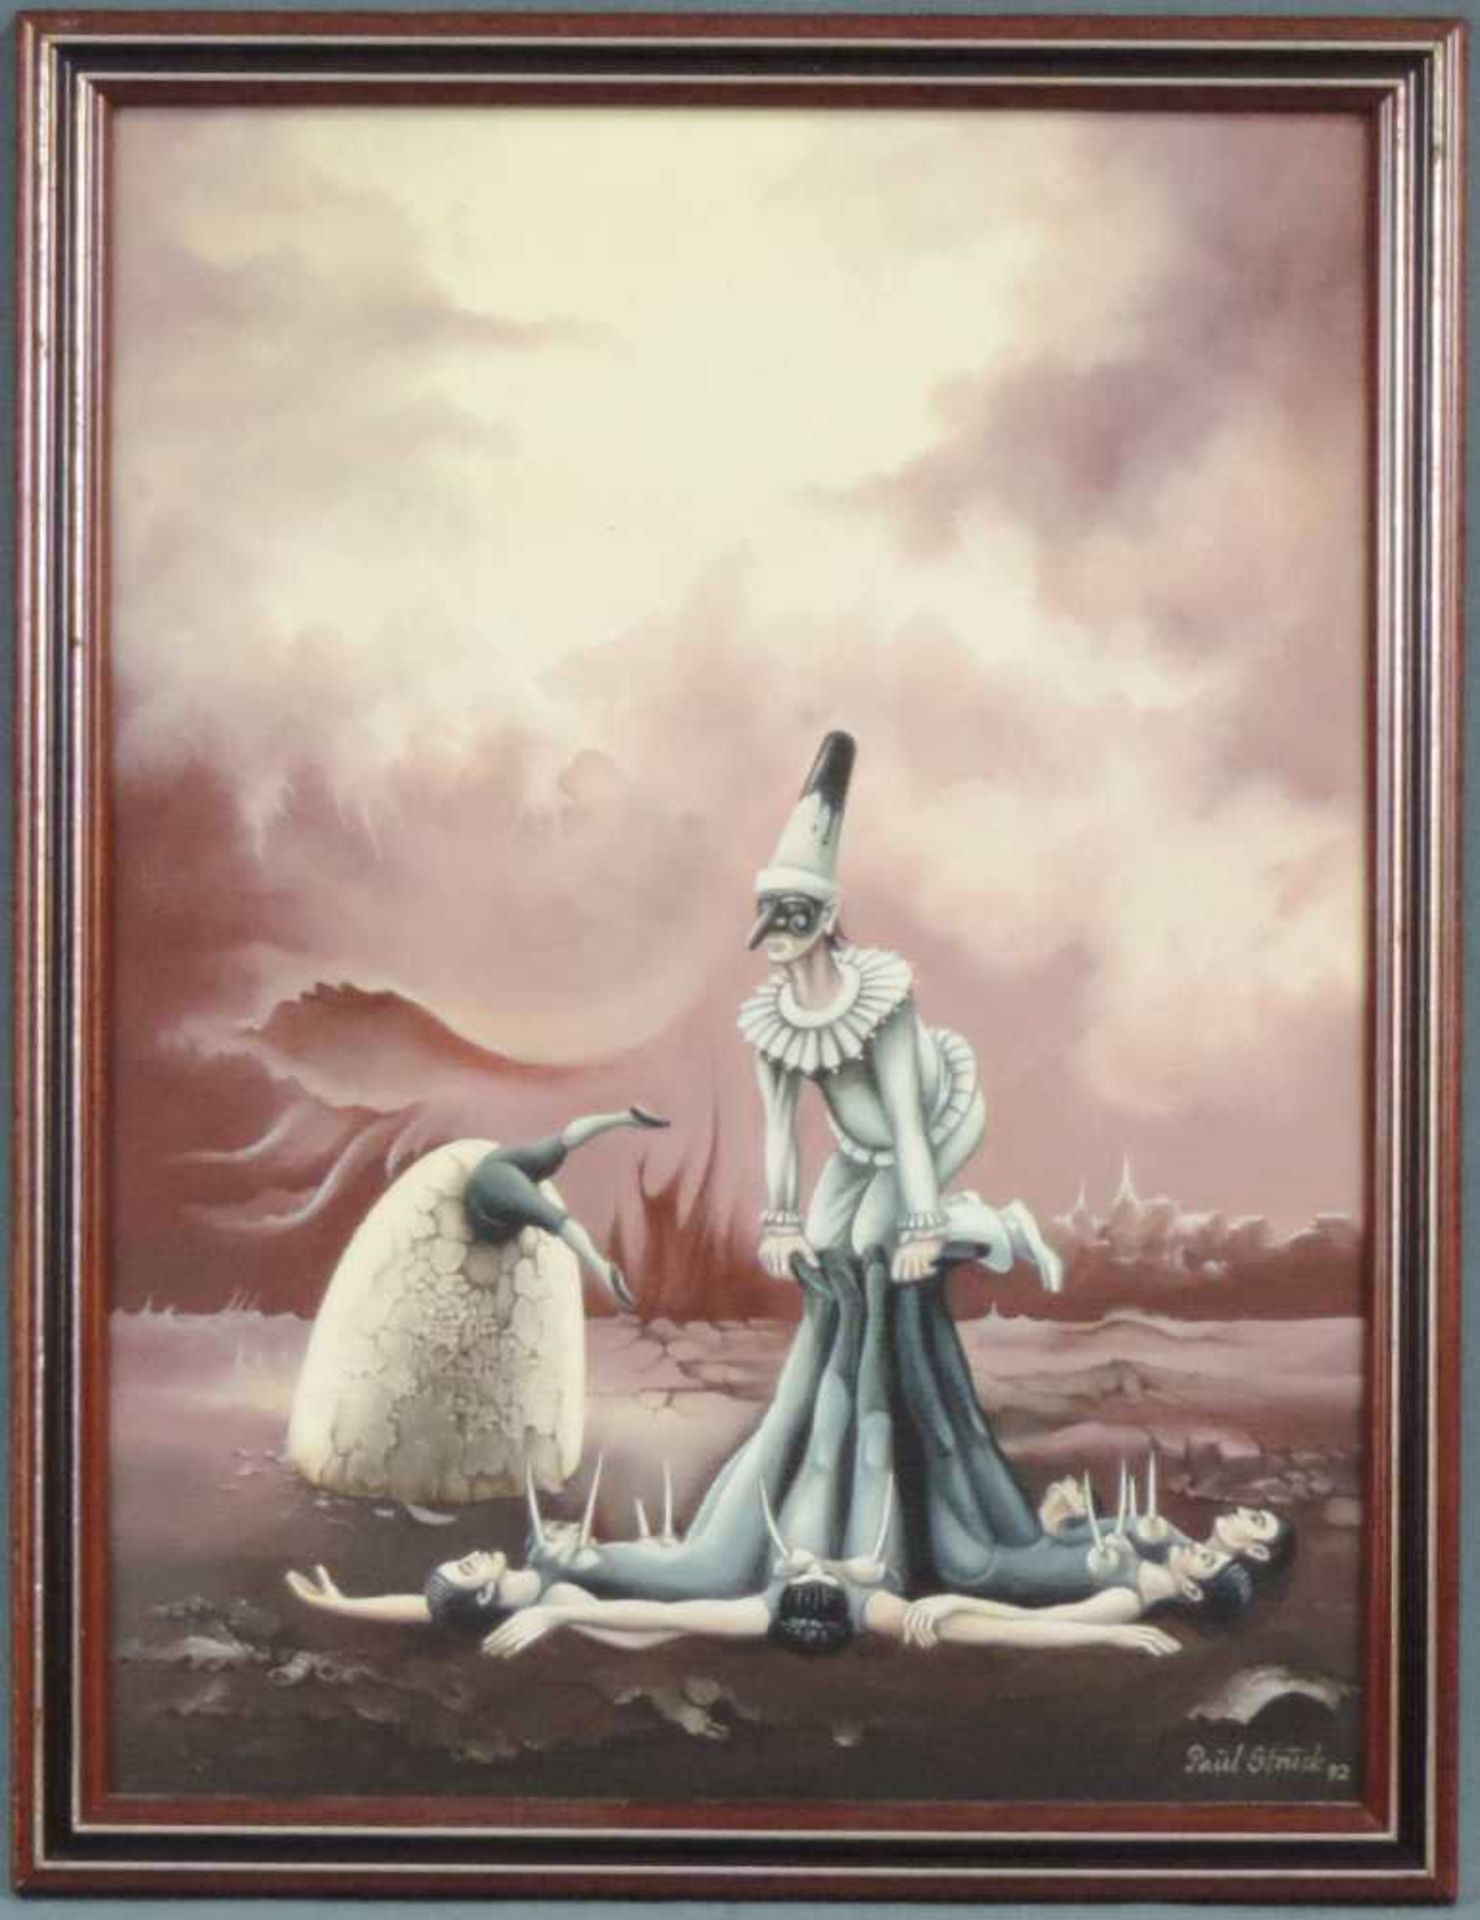 Paul STRUCK (1928 - 2015). "Pulchinella hält Ausschau". 40 cm x 30 cm. Gemälde, Öl auf Leinwand.